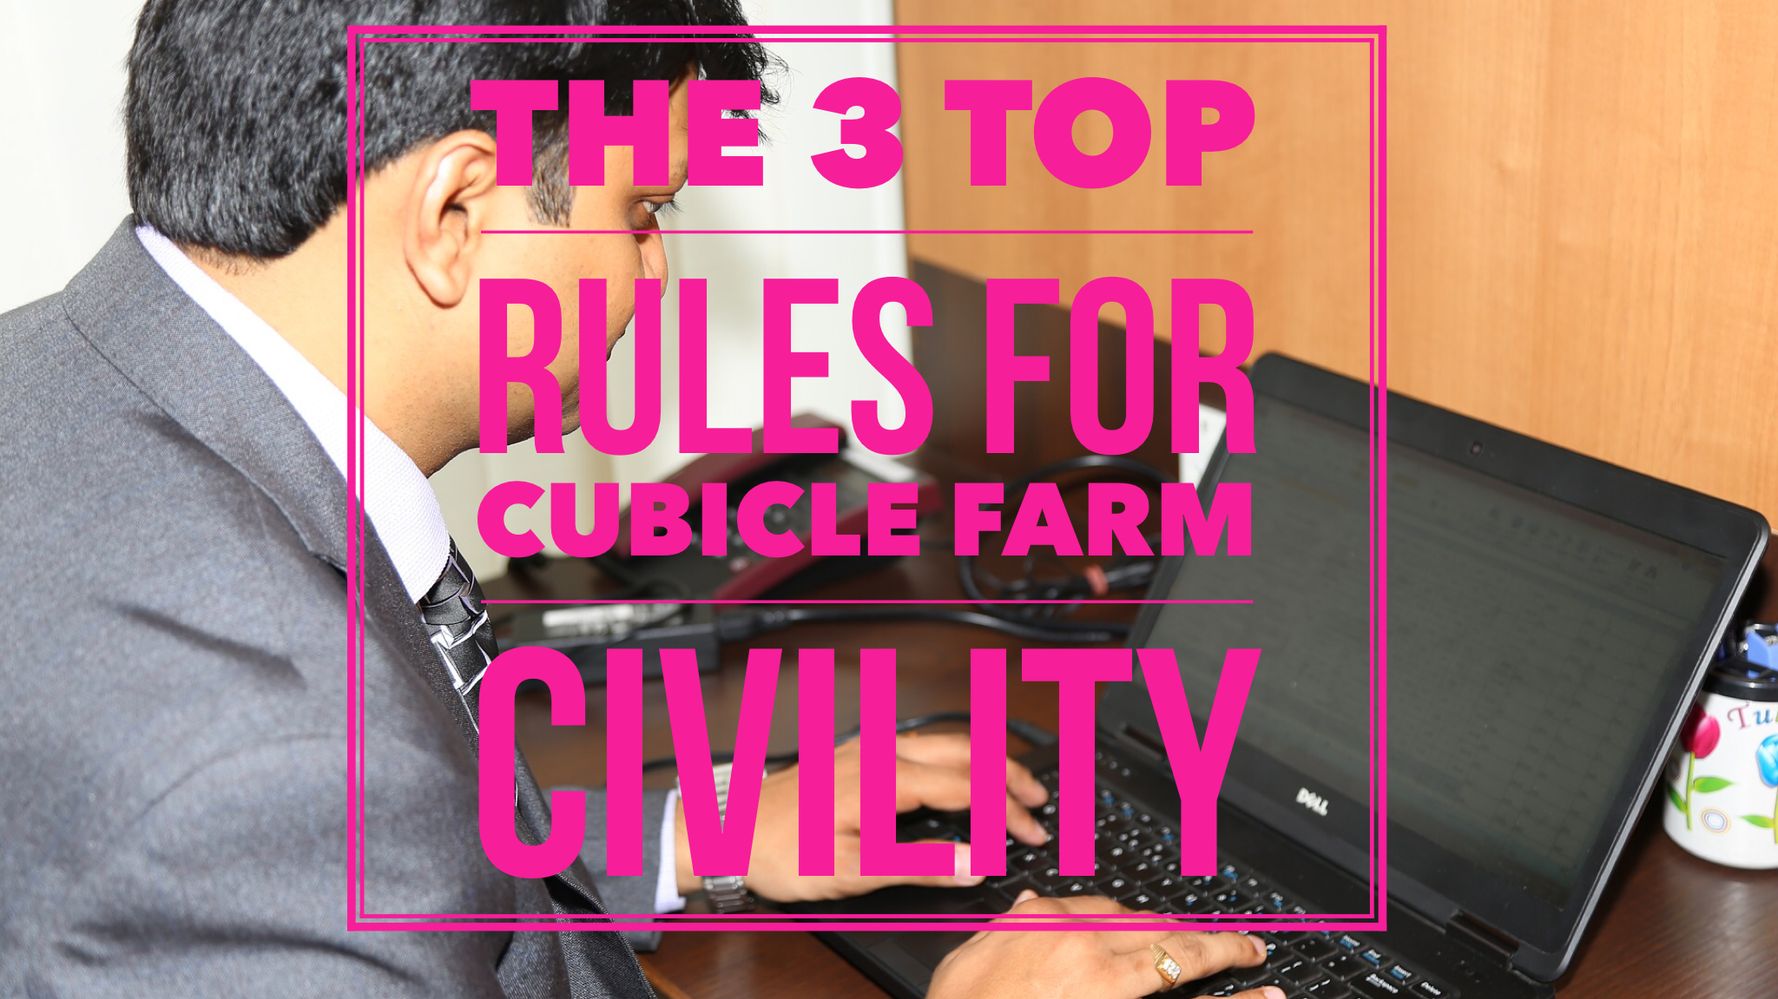 cubicle farm etiquette